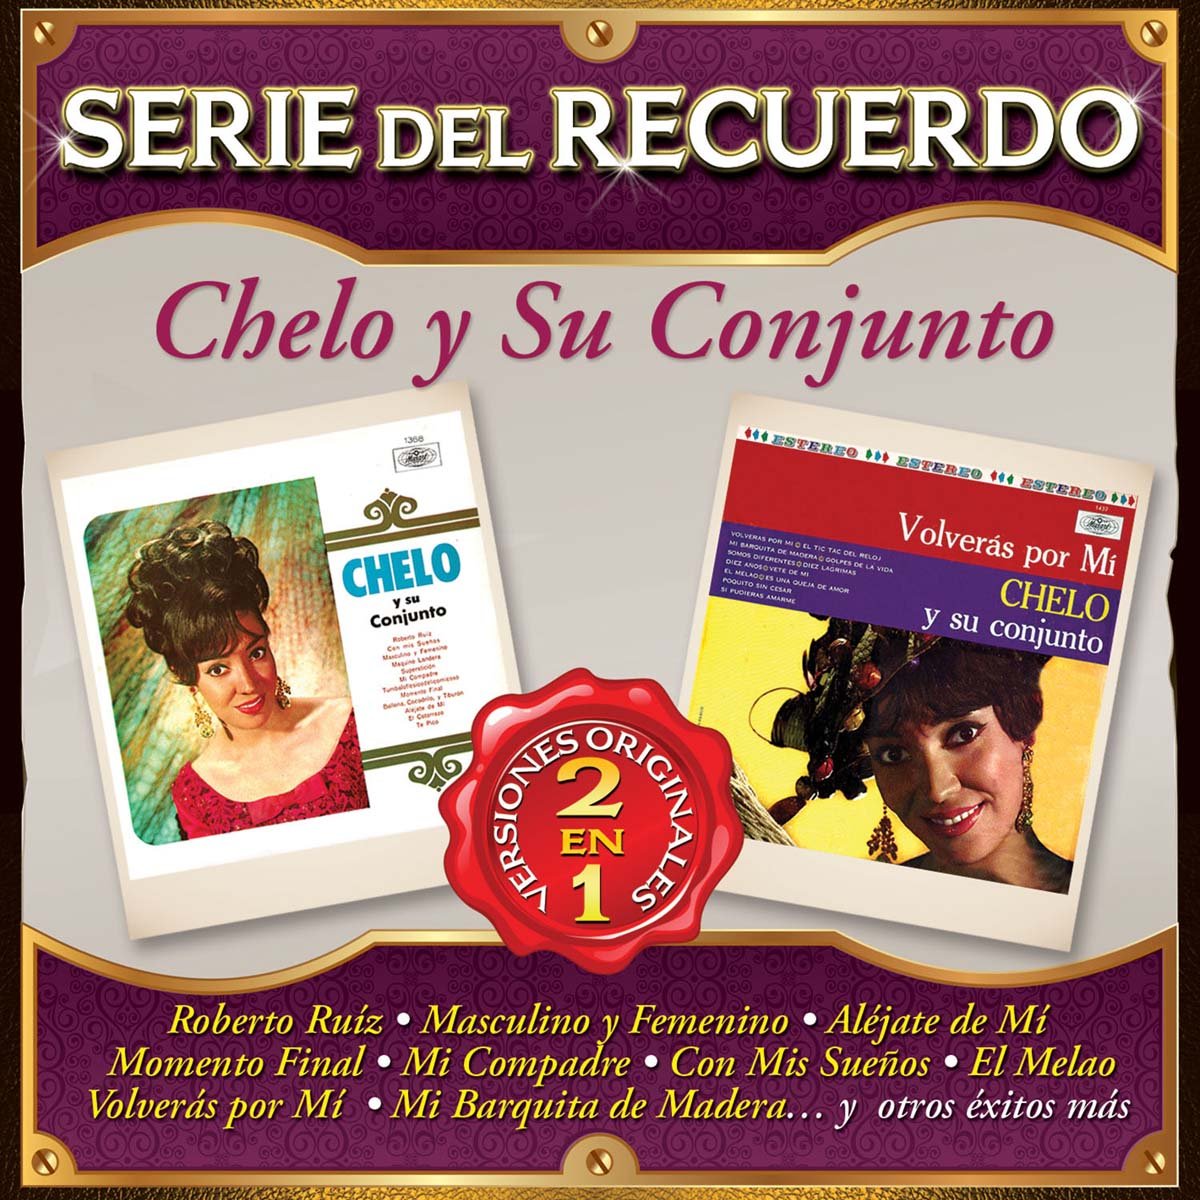 Cd Chelo Y Su Conjunto Serie Del Recuerdo 2 en 1